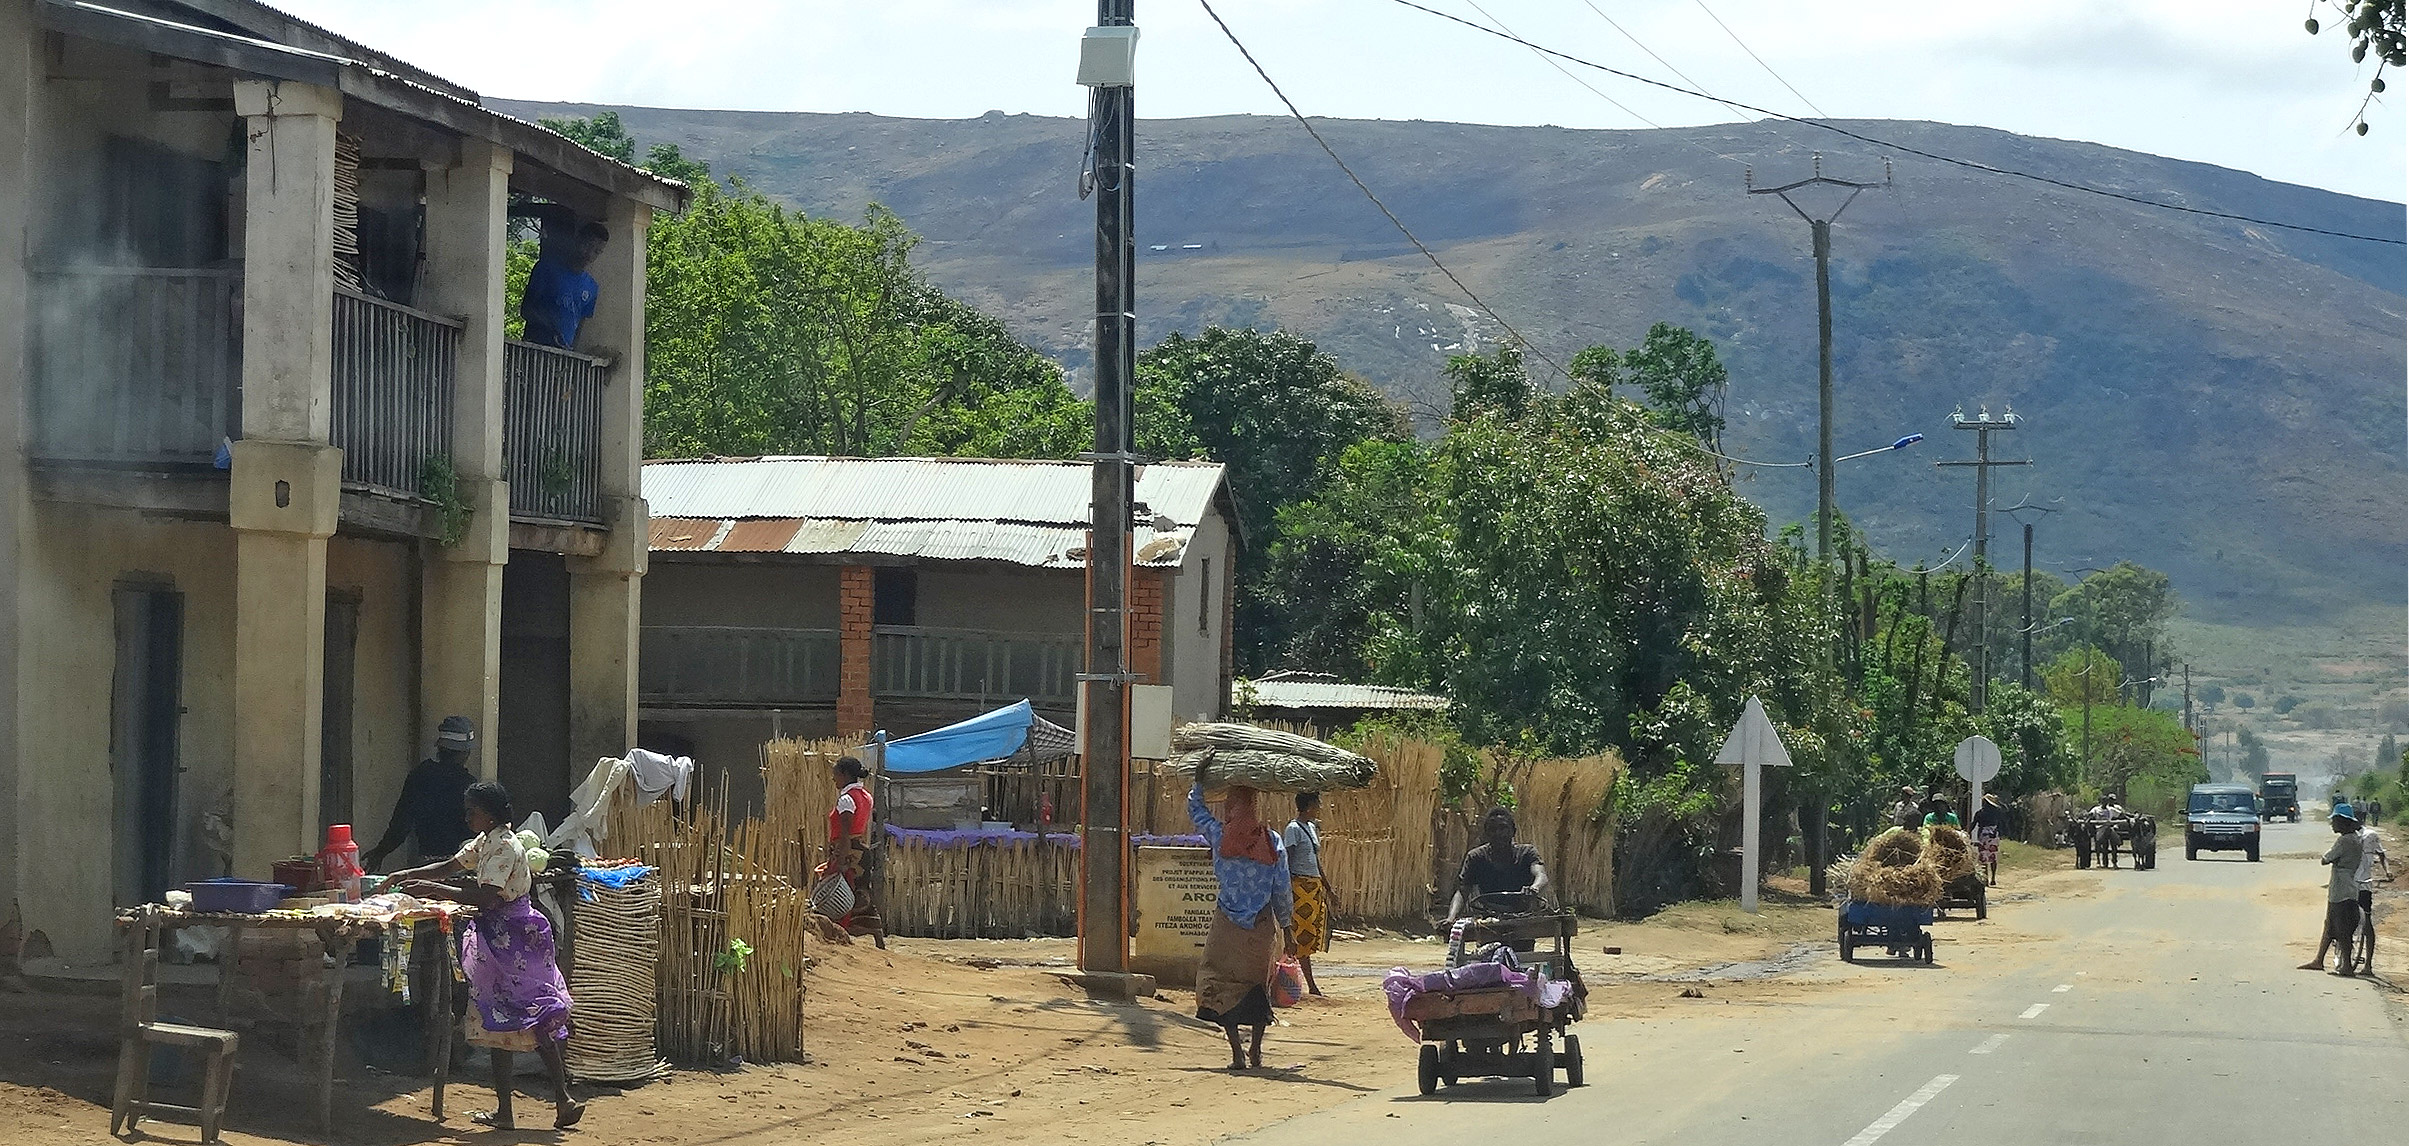 Straßenleben in Madagaskar